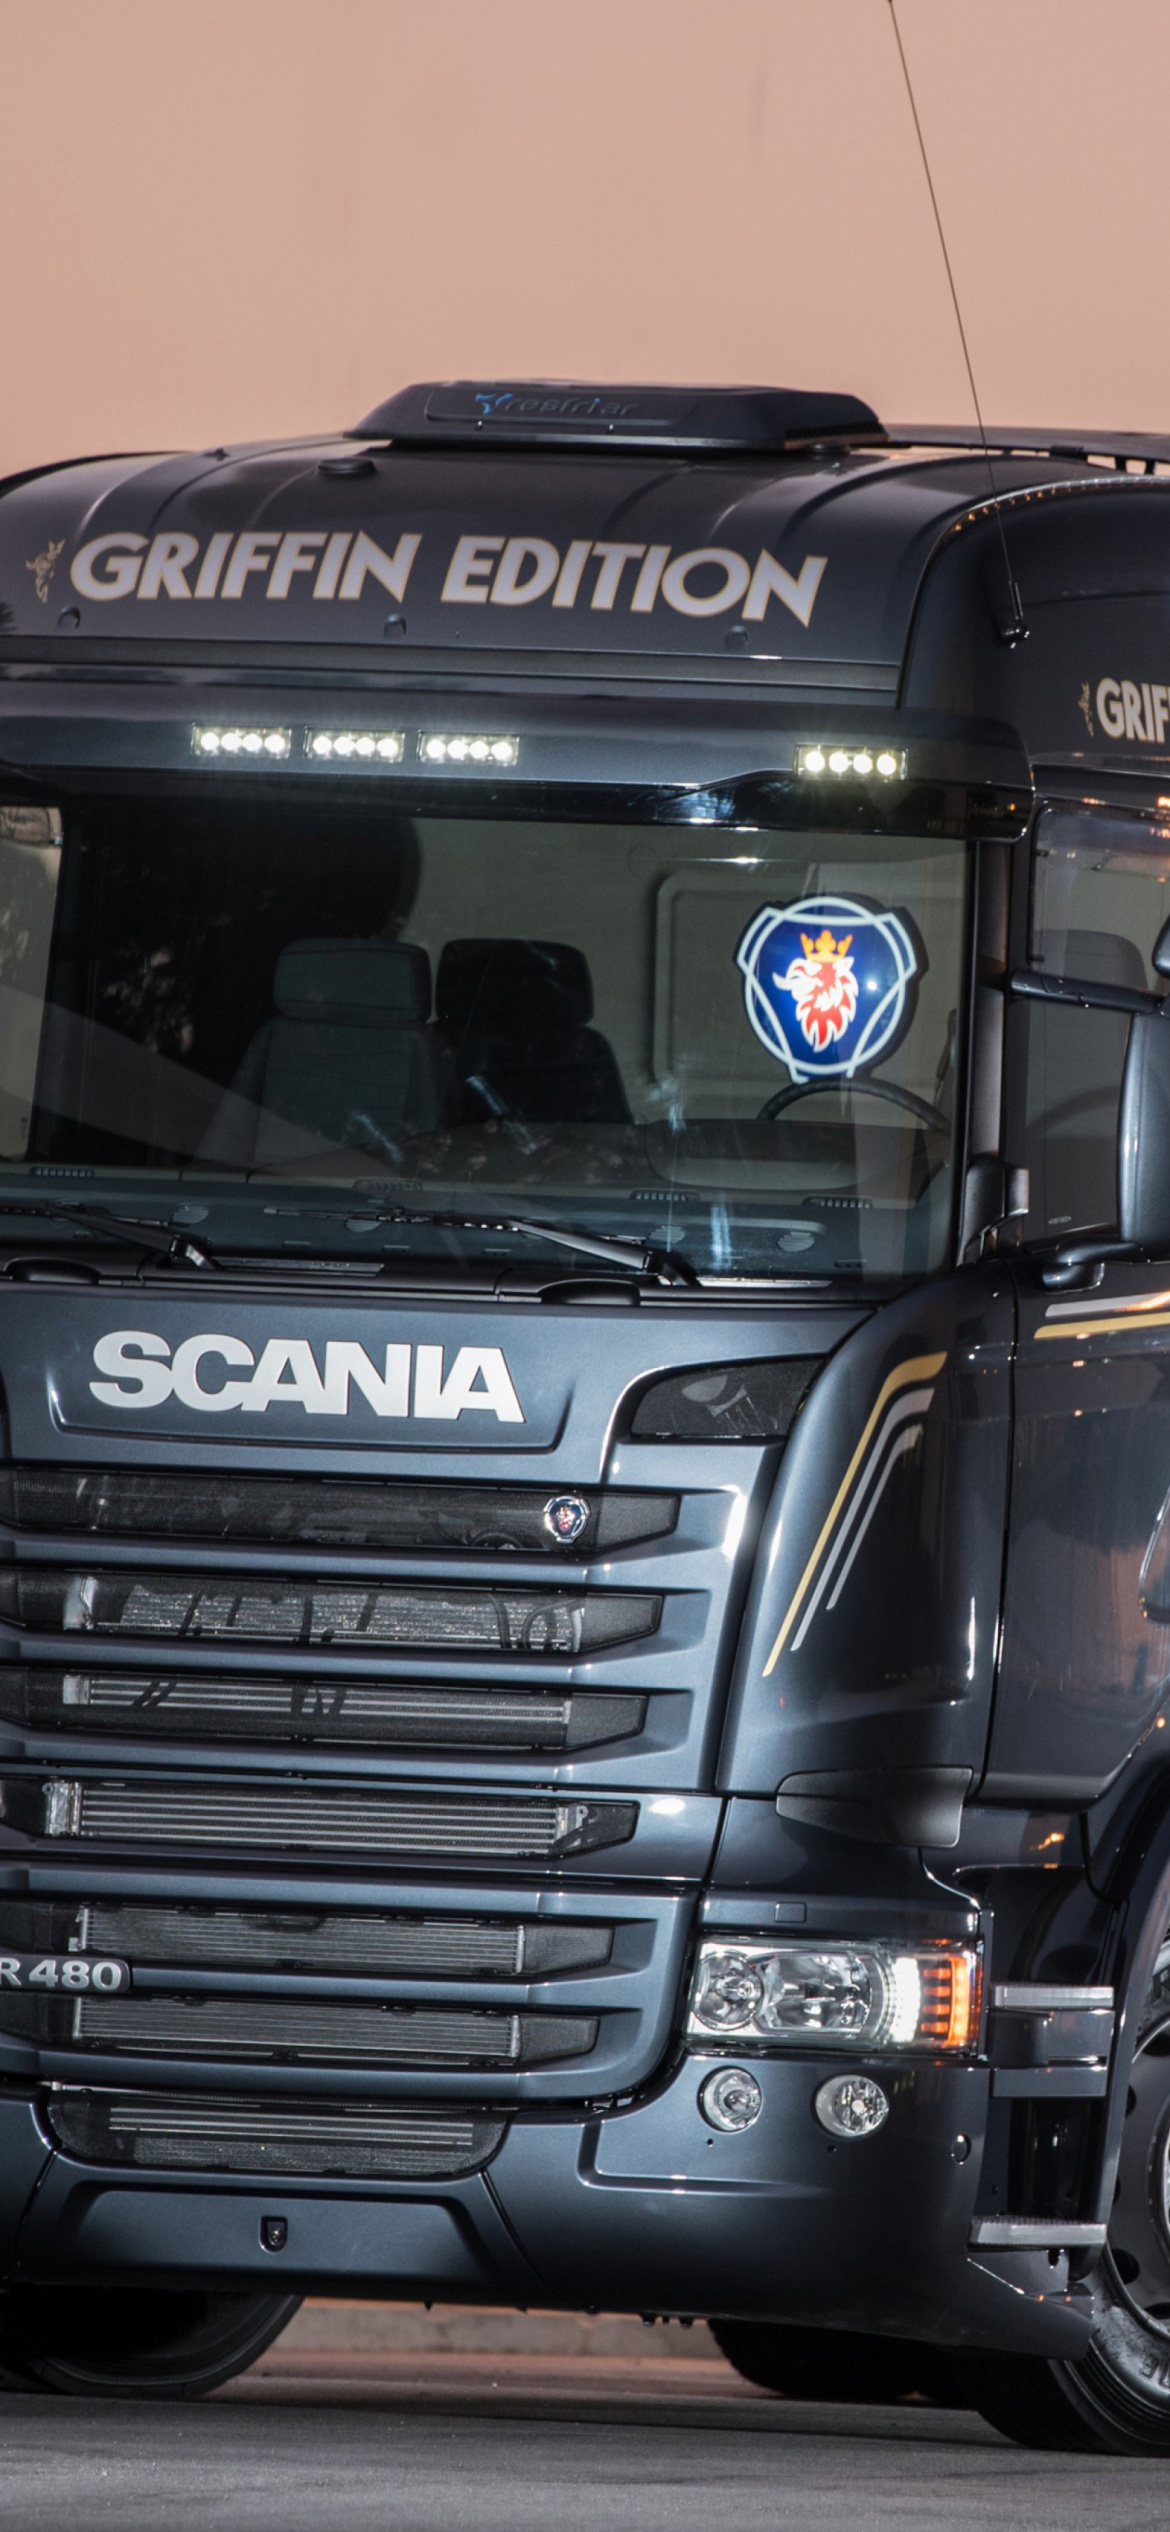 Обои Scania R480 Truck 1170x2532